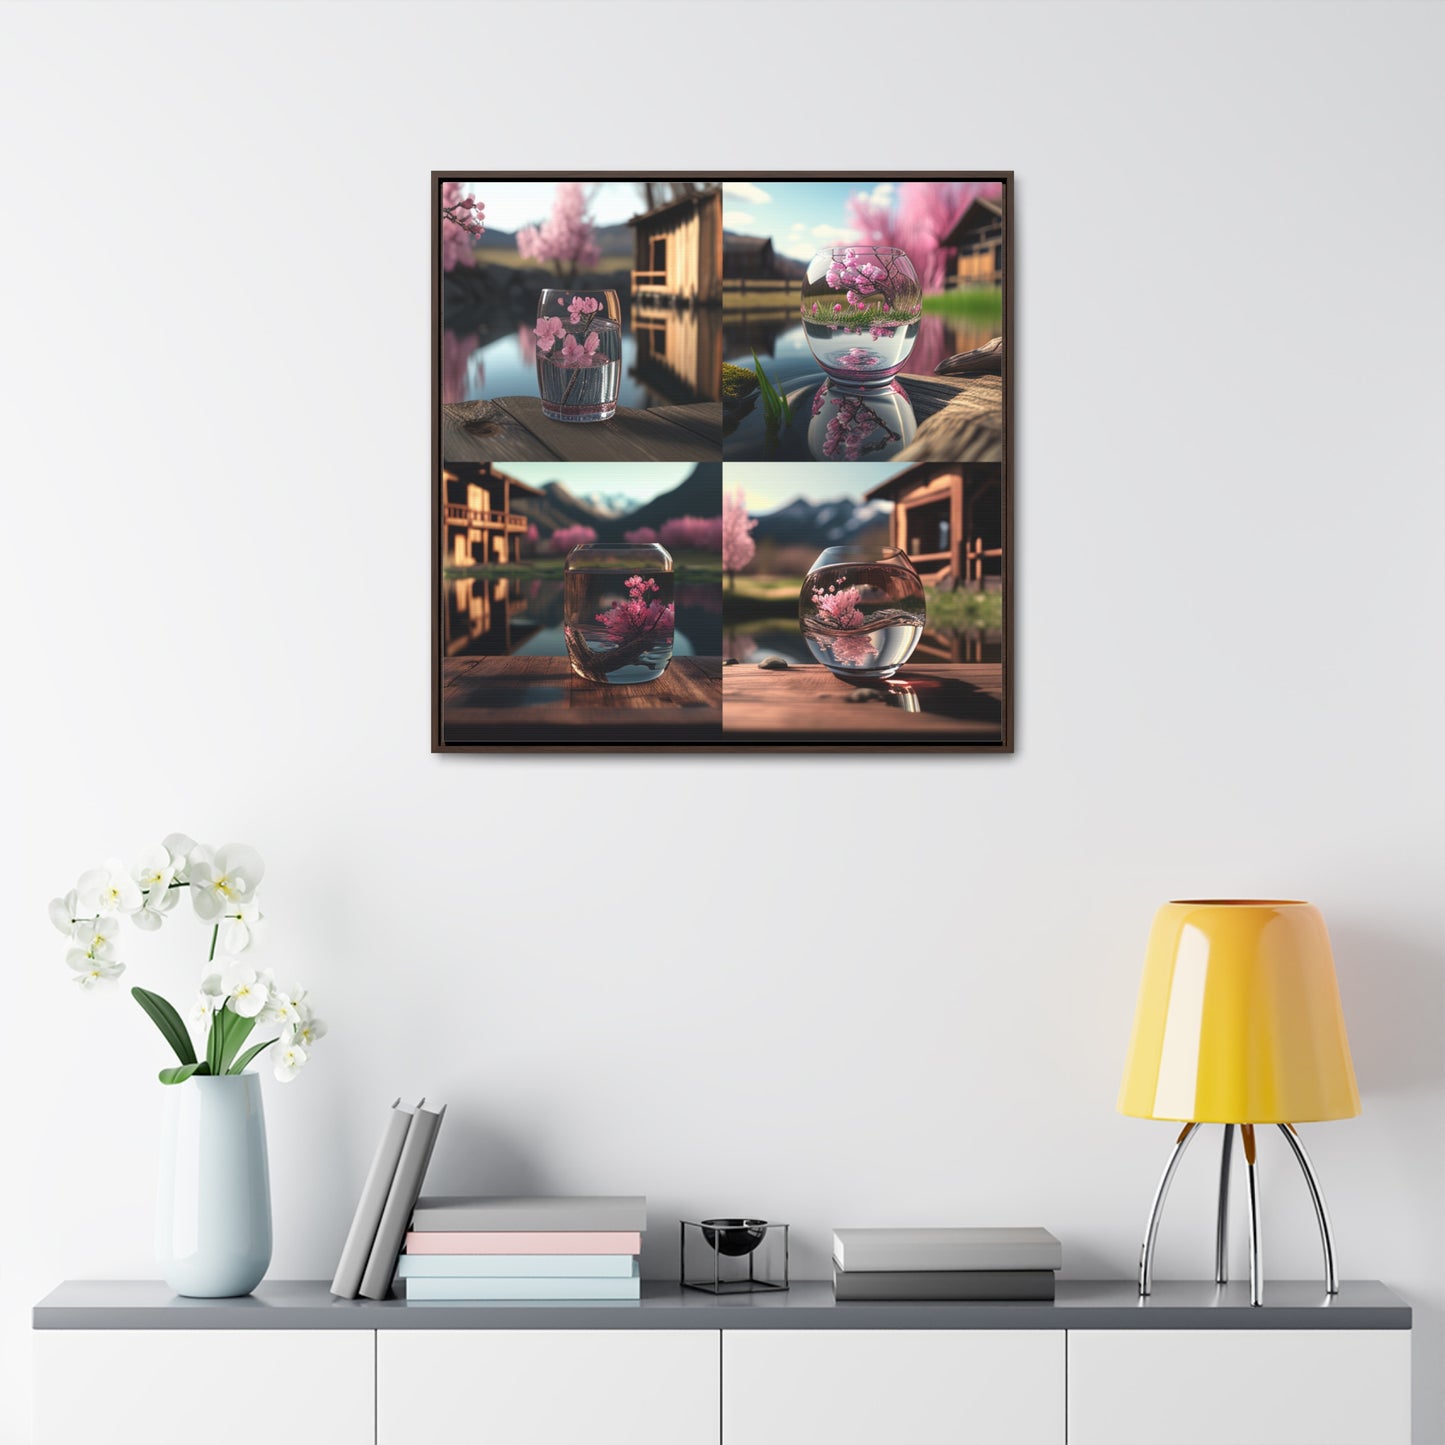 Gallery Canvas Wraps, Square Frame Cherry Blossom 5